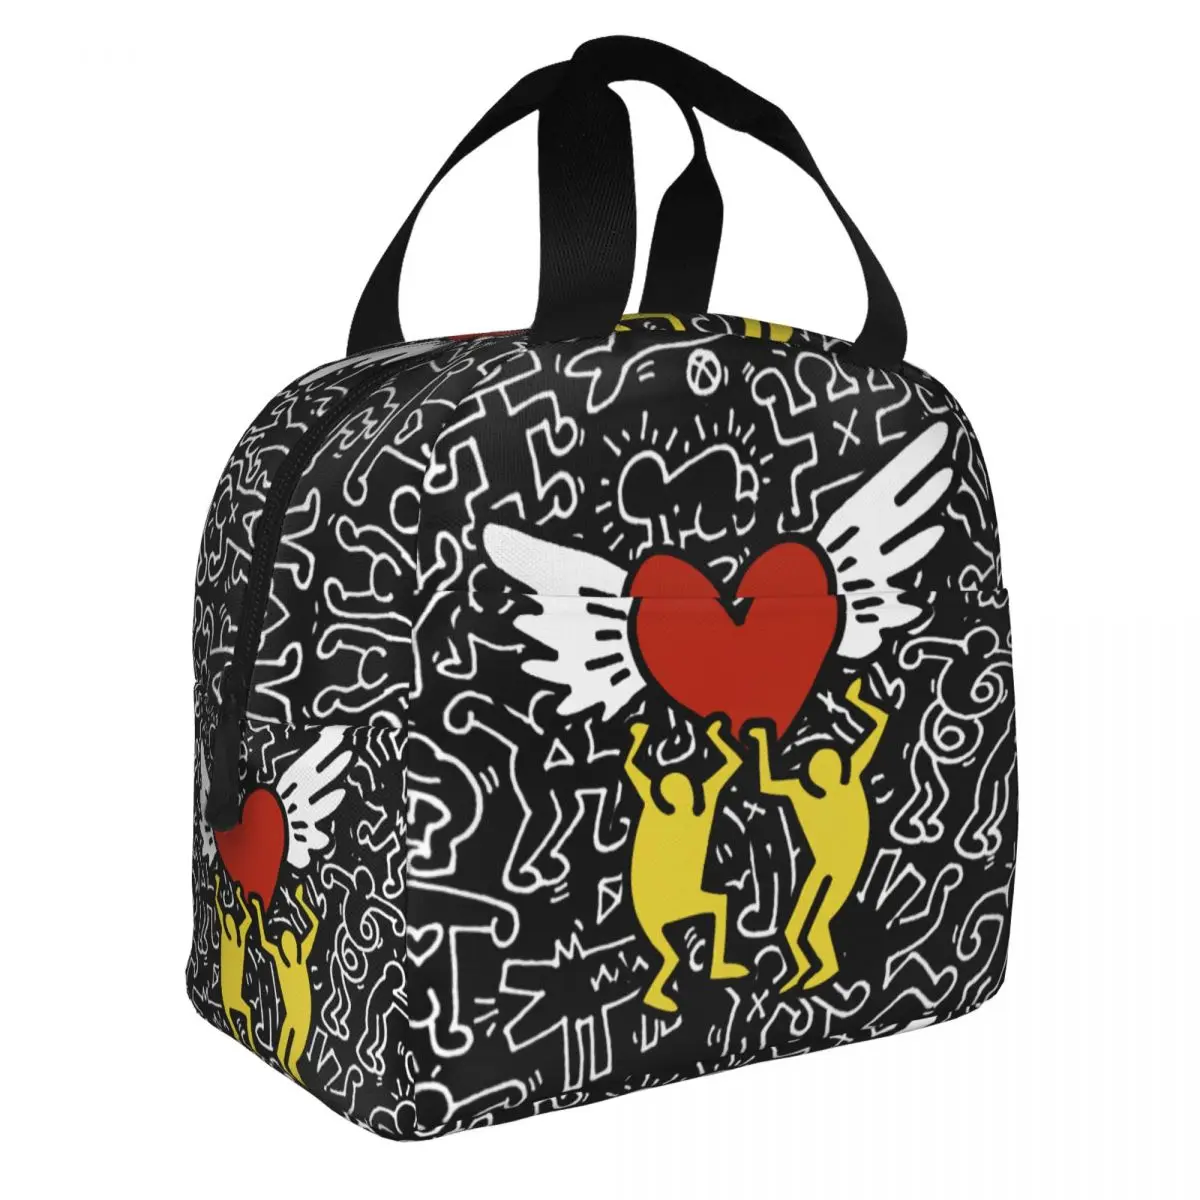 

Изолированная сумка-тоут Haring с абстрактным граффити, термоохладитель с геометрическим рисунком Кита, коробка бенто для женщин, школьная сумка для работы и еды